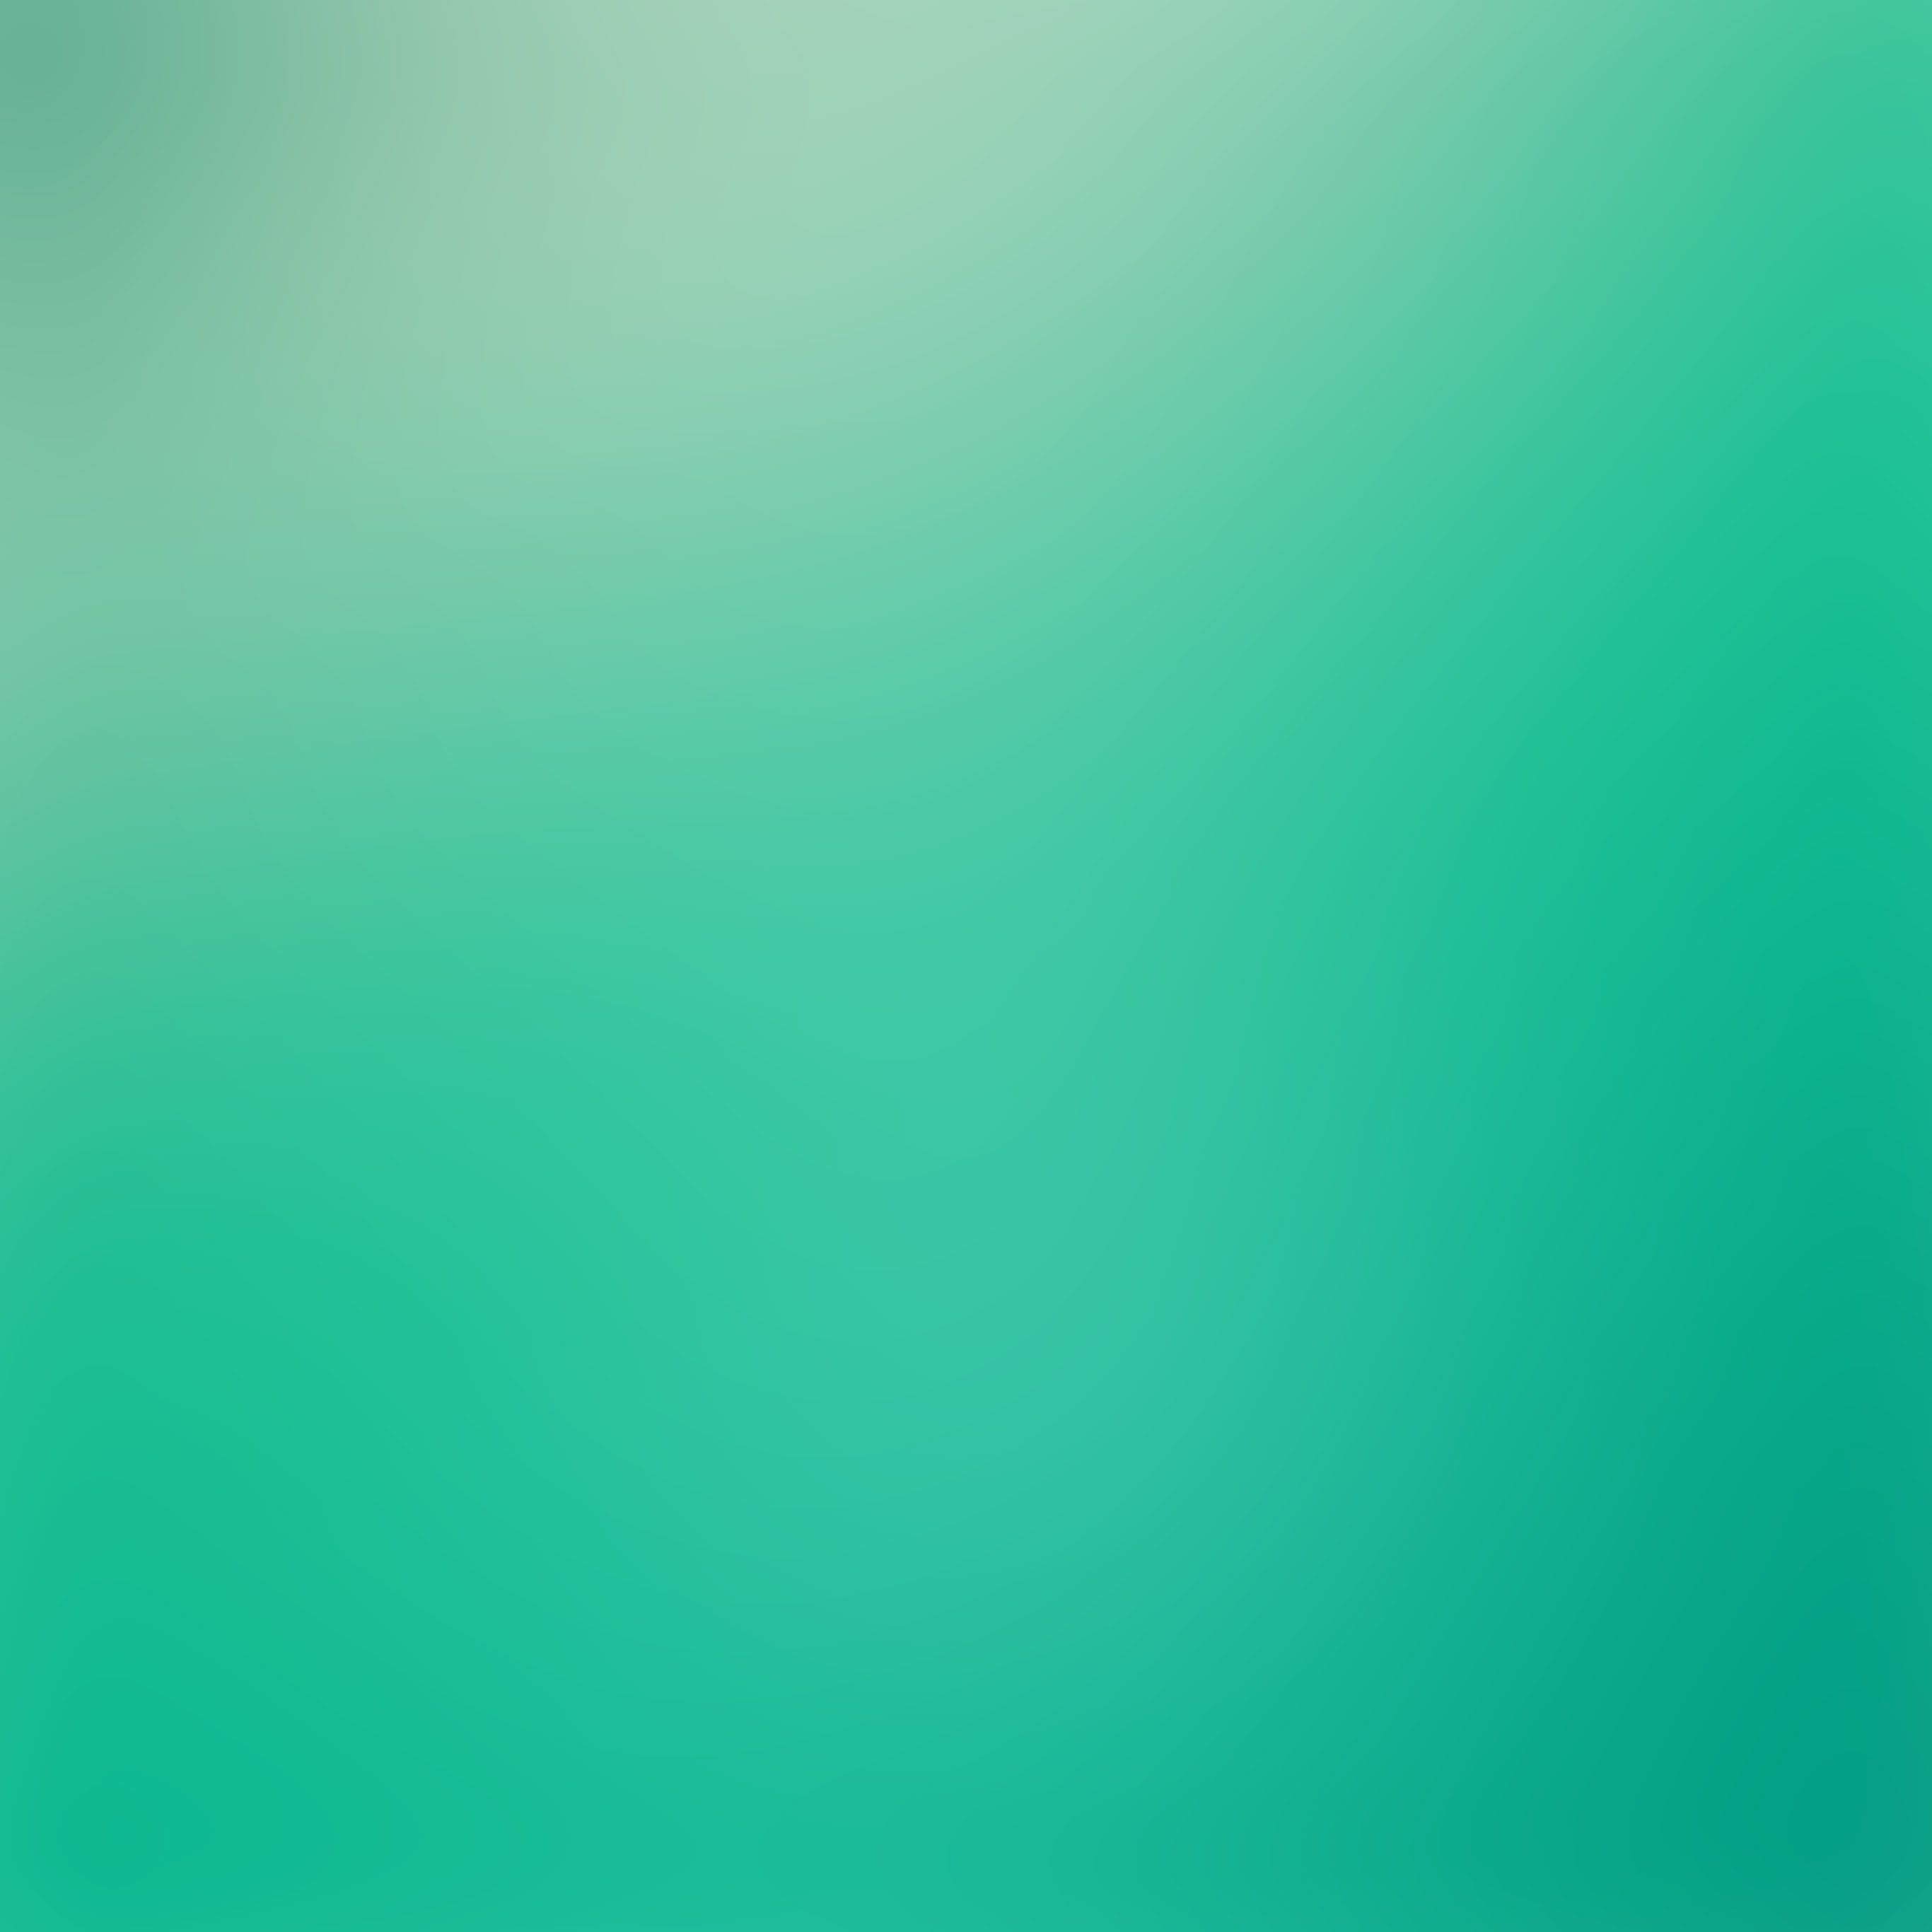 Soft Spring Green Emerald Gradation Blur Wallpaper